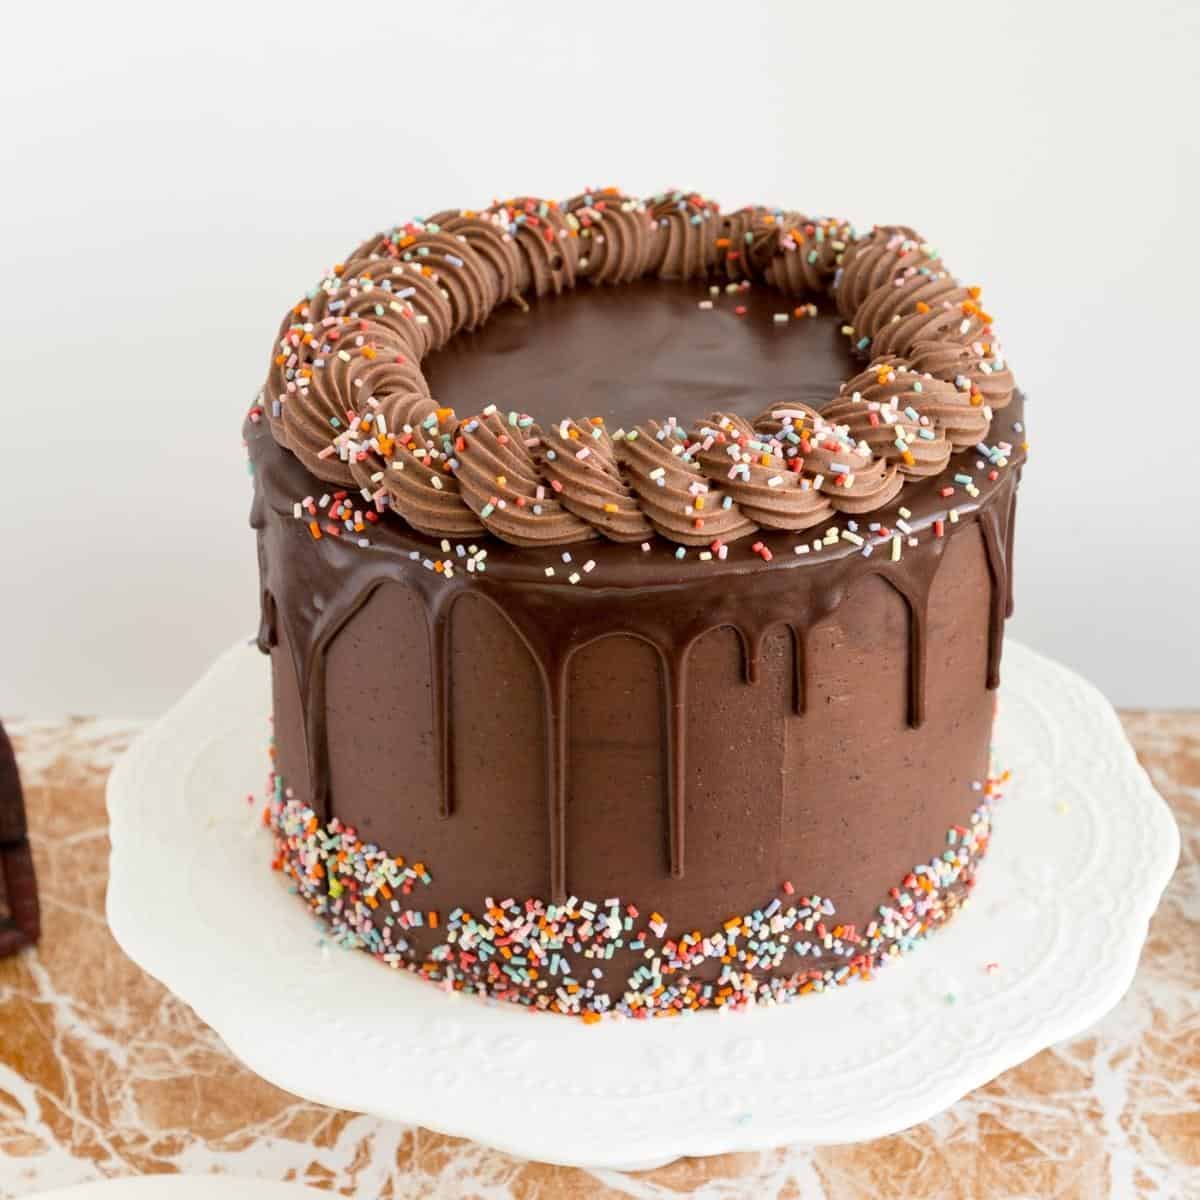 Chocolate birthday cake - Kidspot